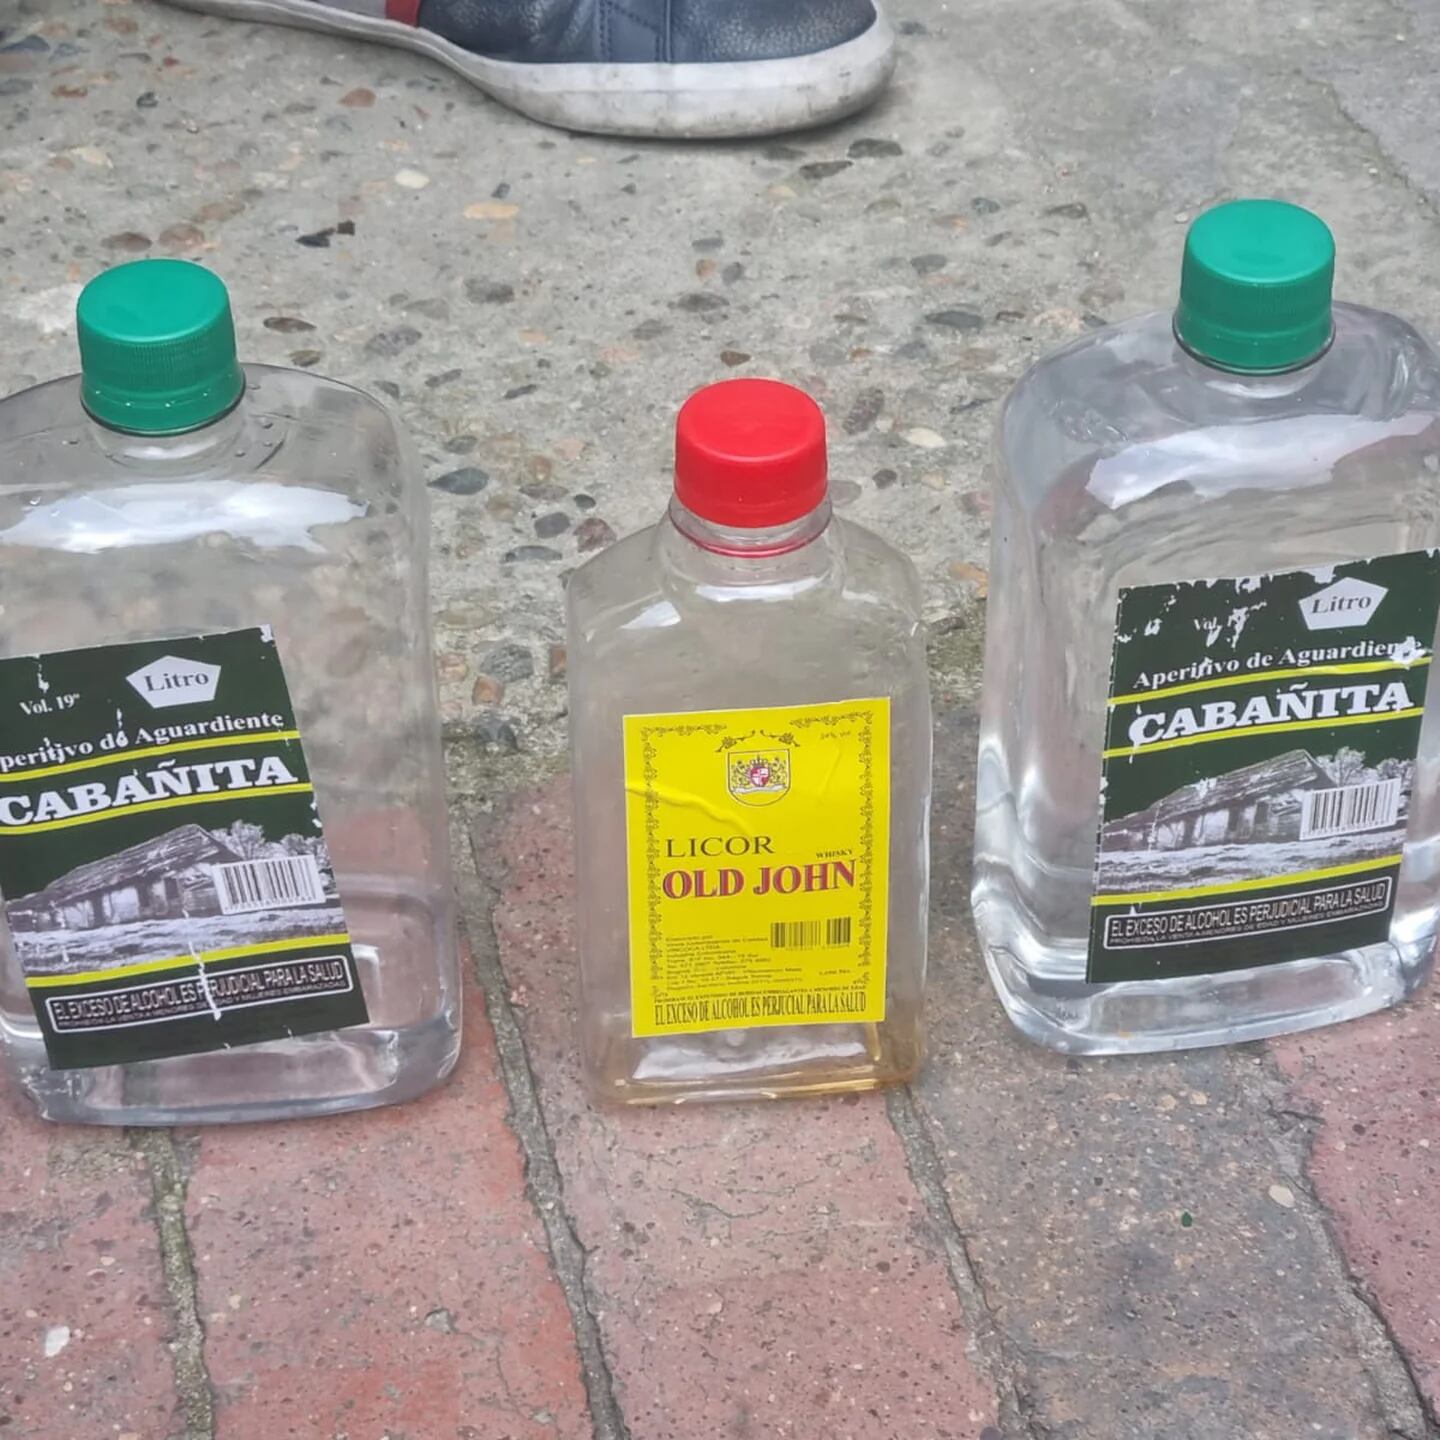 Botellas defectuosas de Licores ¿Qué debo hacer? – Licores Medellín